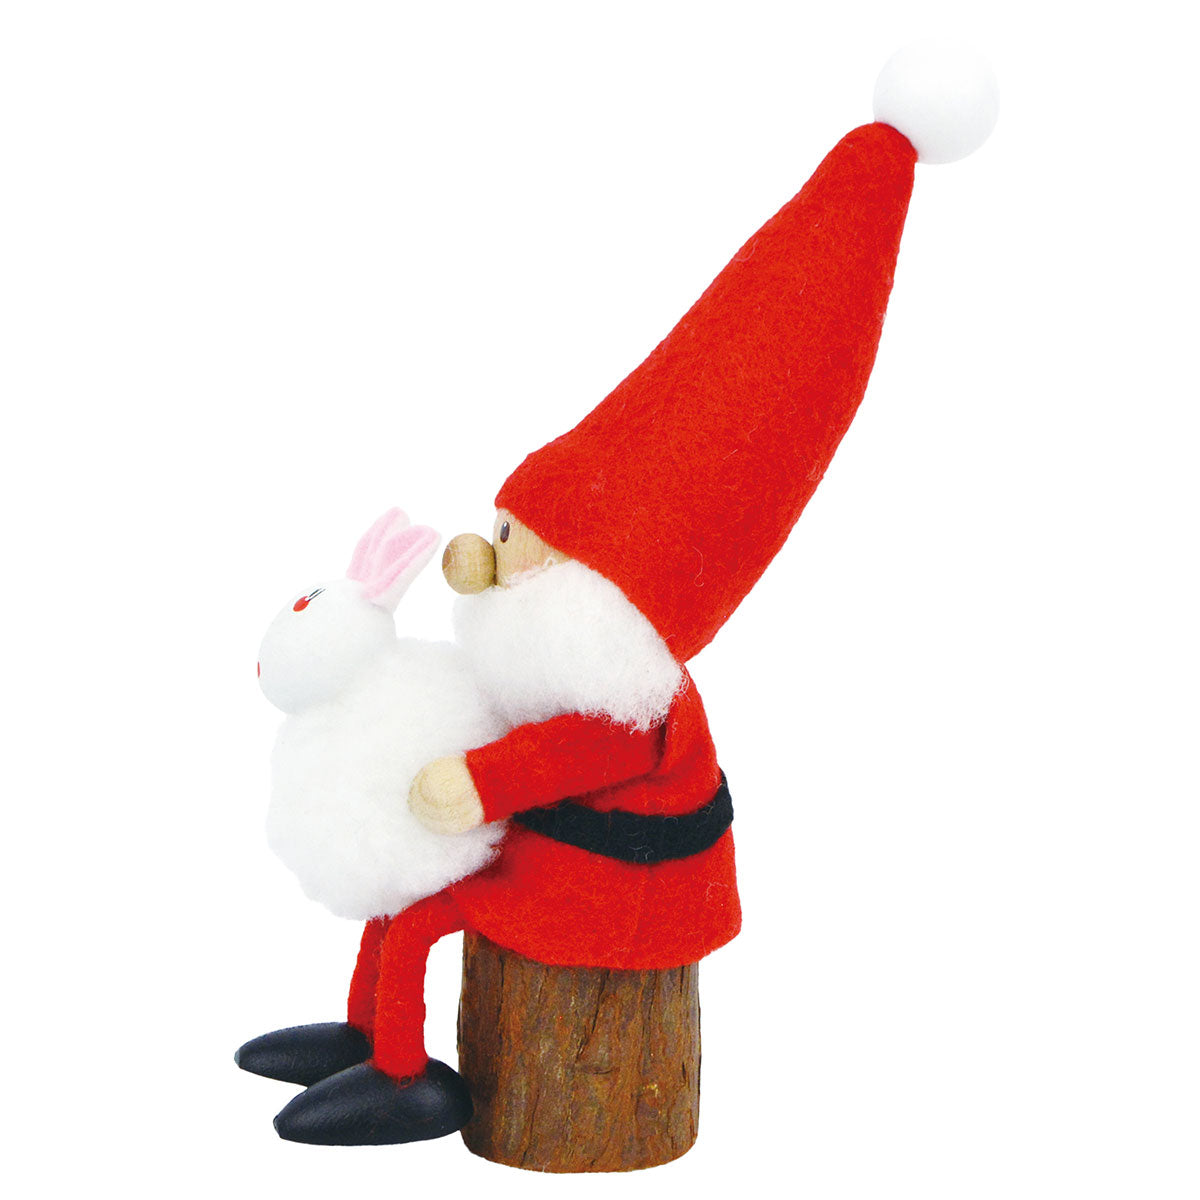 NORDIKA nisse ノルディカ ニッセ クリスマス 木製人形 ( ウサギを抱えたサンタ )